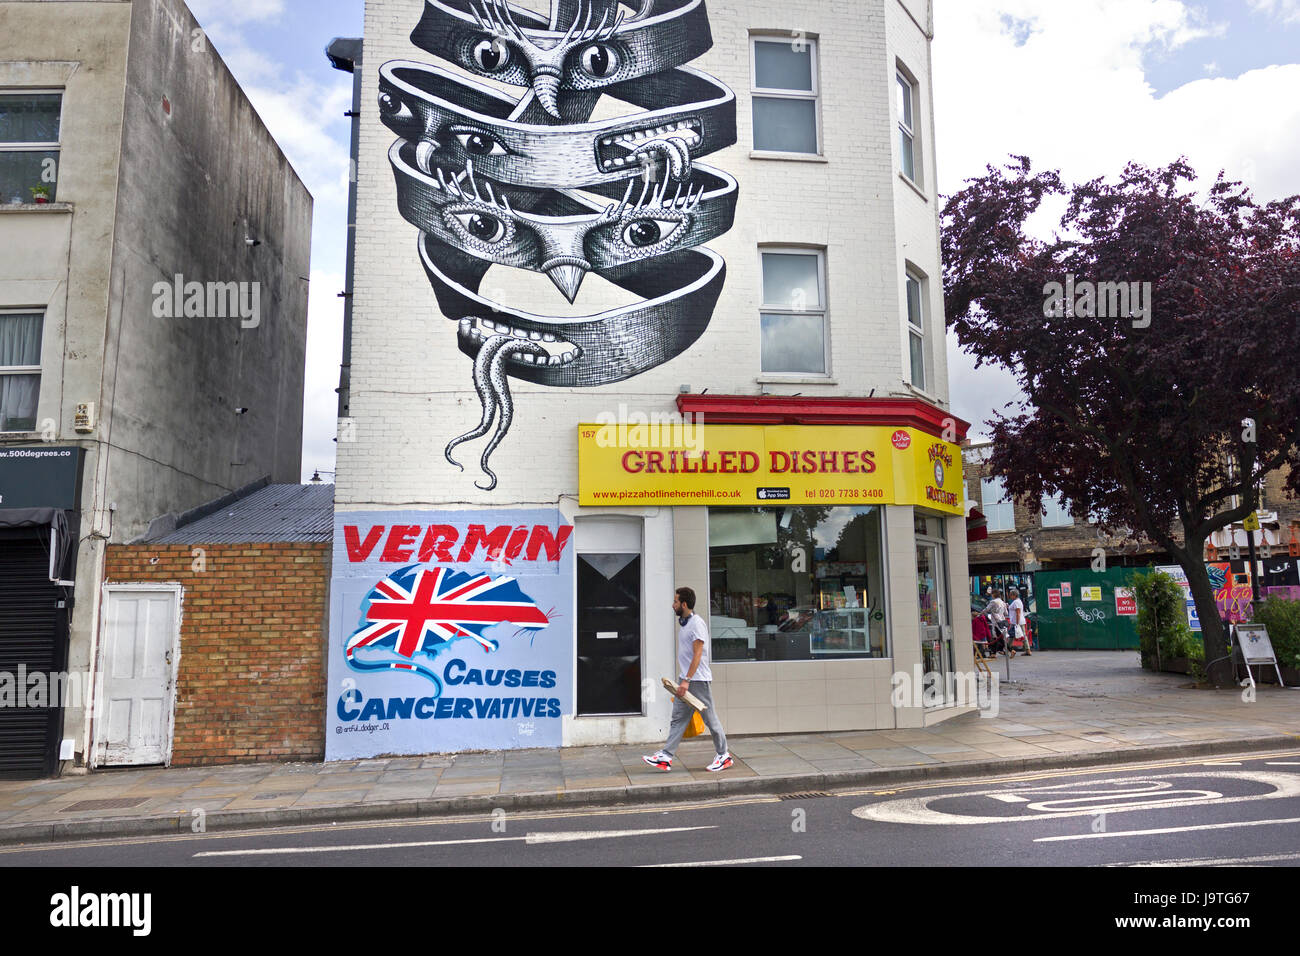 Per 'VERMIN provoca Cancervatives' nuovo murale politico da artista di strada evasore Artful su una parete in Herne Hill, SE London. Al di sopra di esso di un fantastico murale ispirato da M. C. Escher da londinese muralista e artista di strada, flemma. Foto Stock